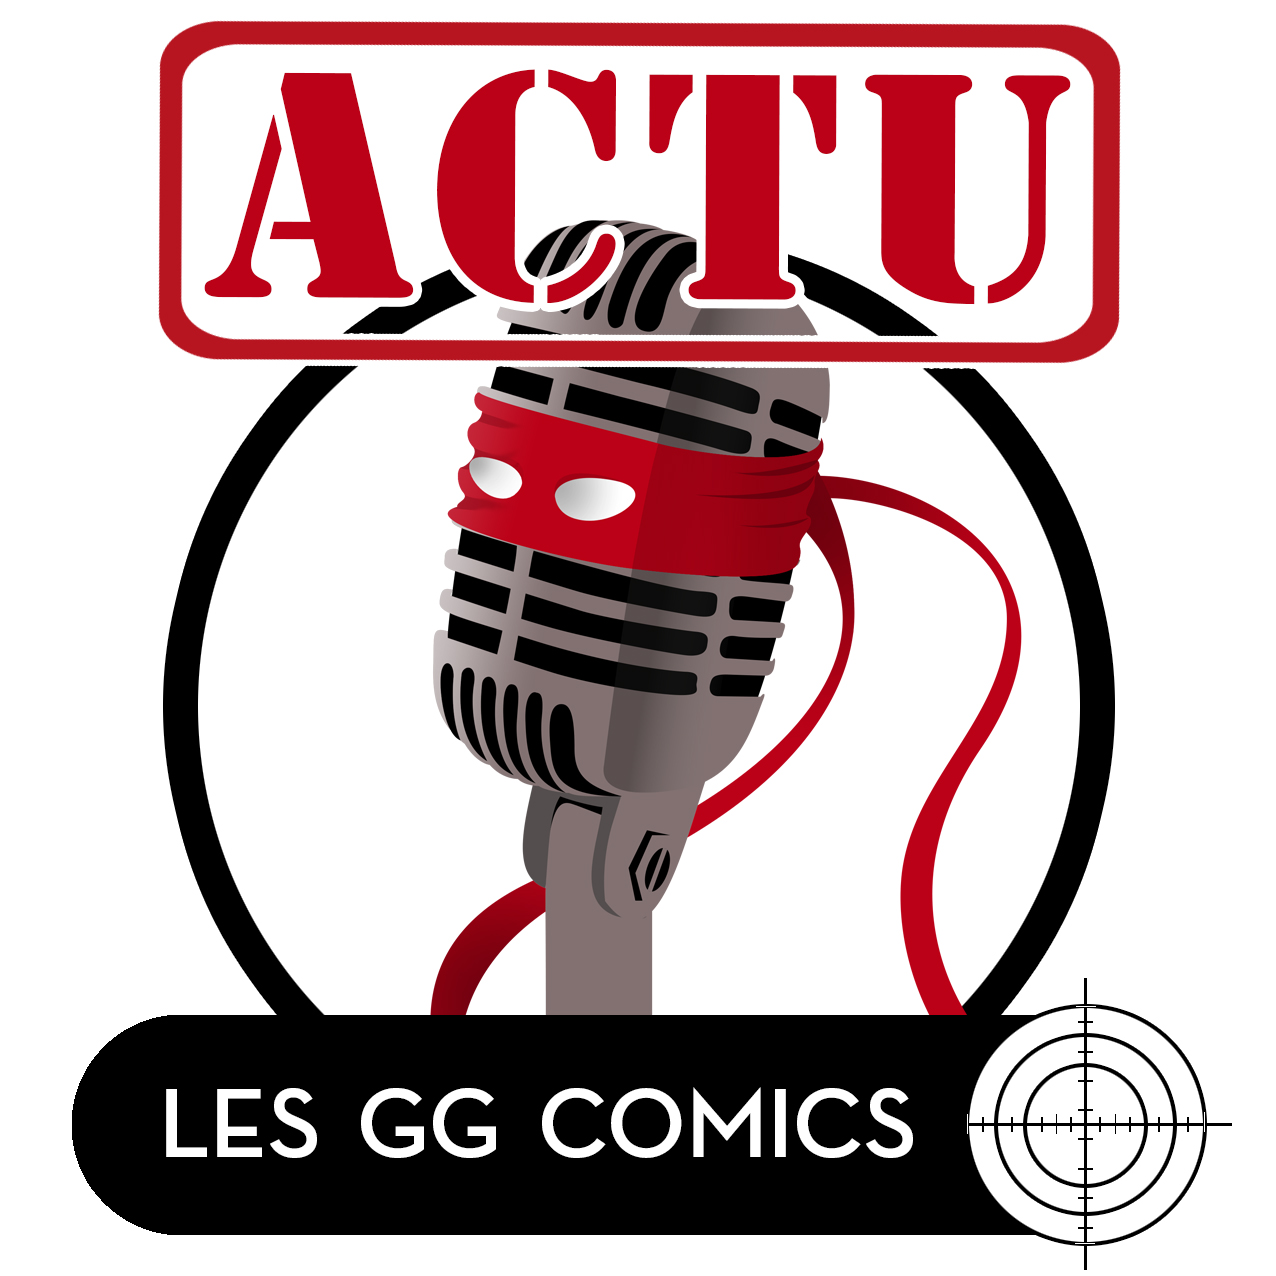 Les GG comics Actu #8 : Vers une restructuration ?